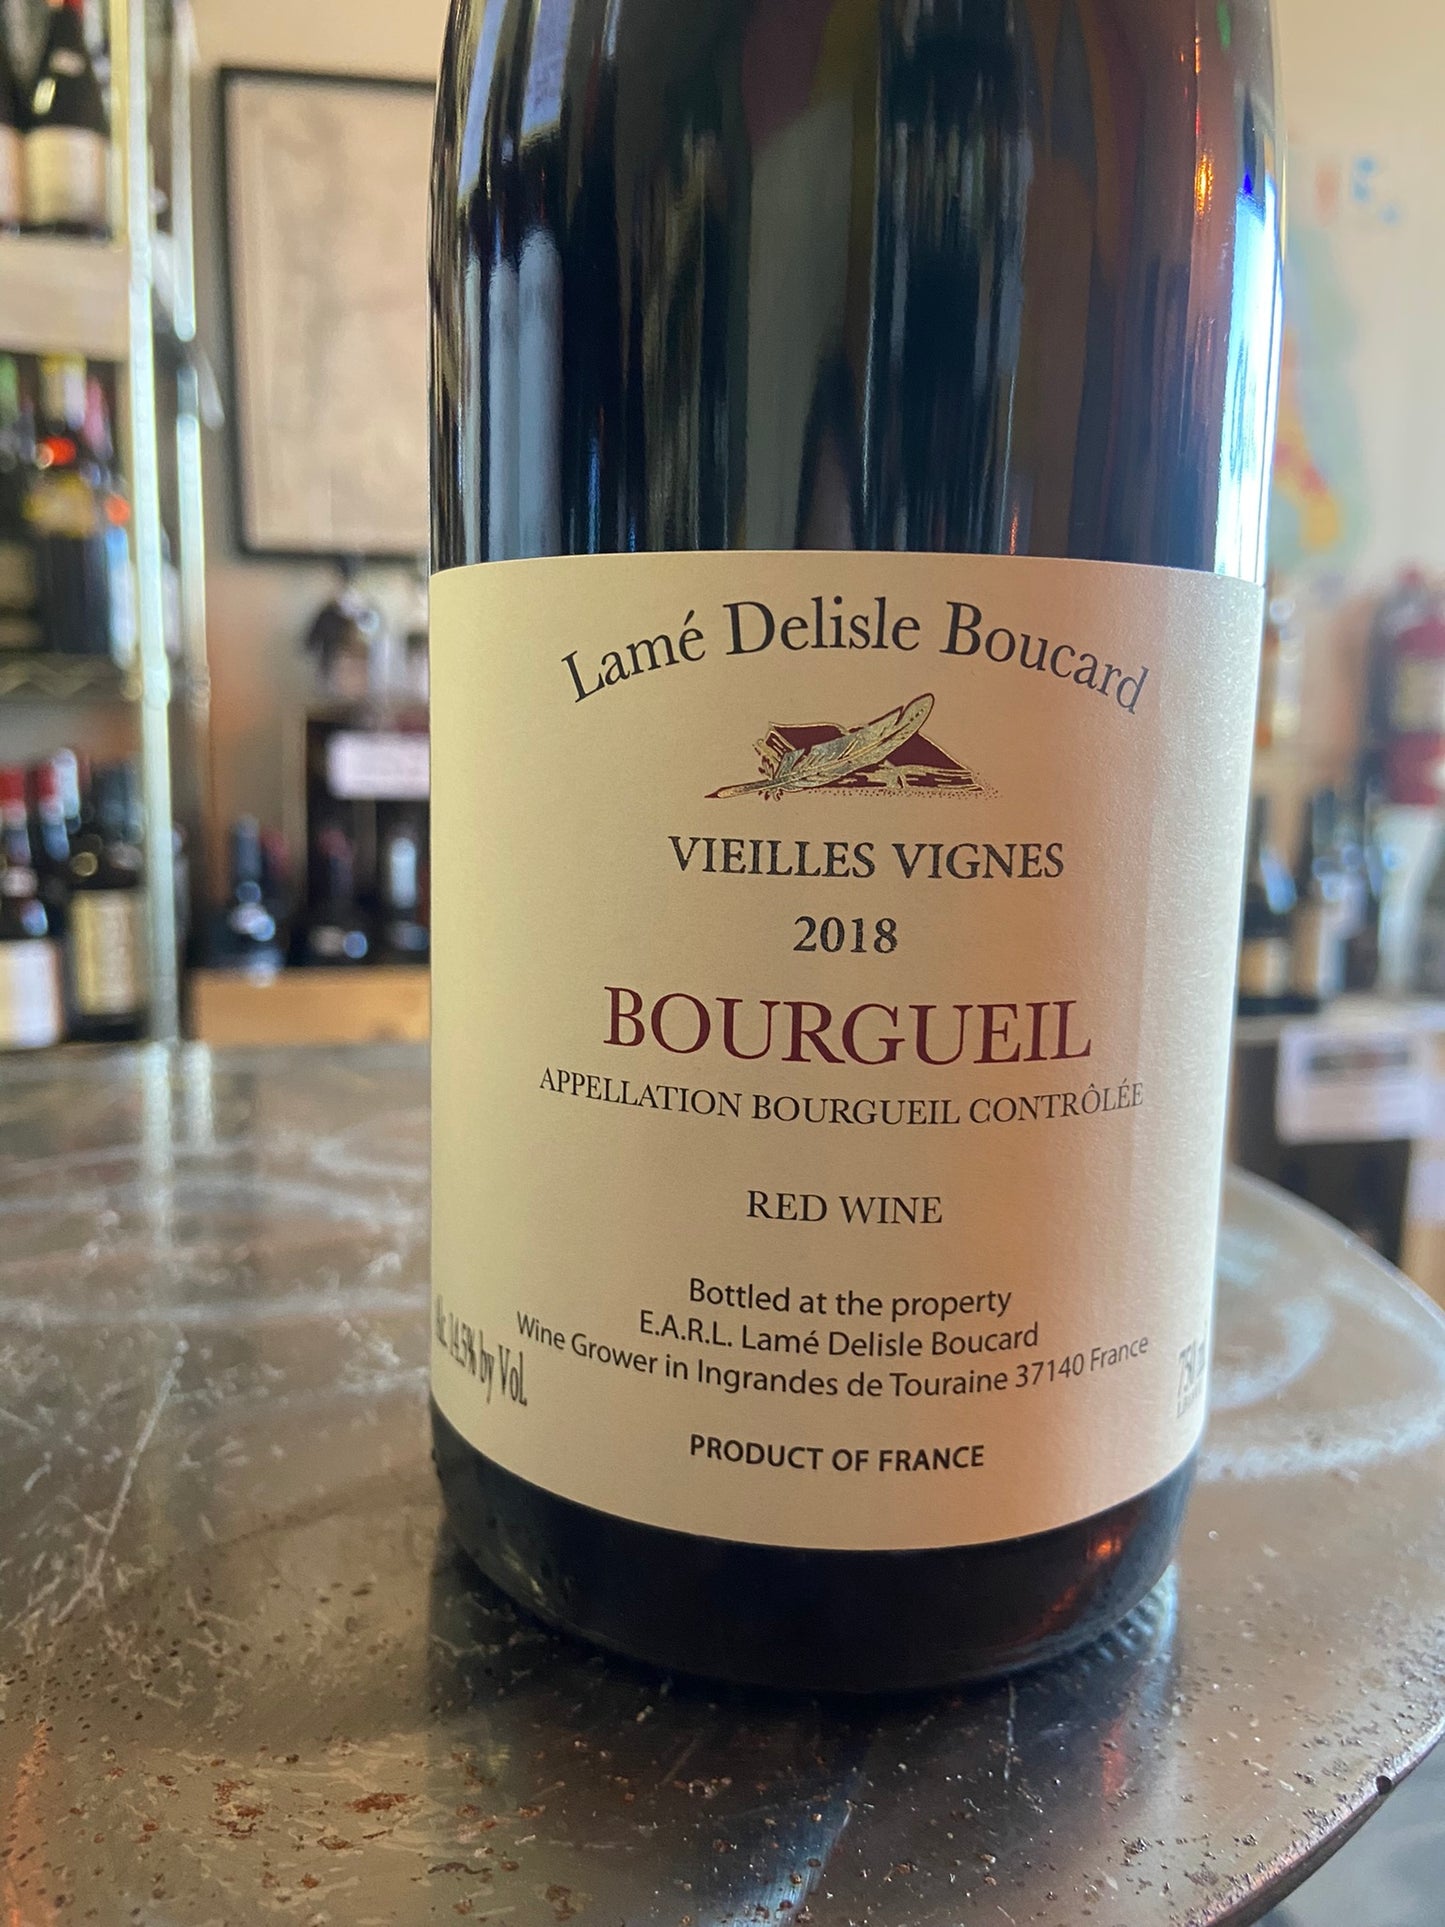 LAME DELISLE BOUCARD 2018 Vieilles Vignes Bourgueil (Loire, France)